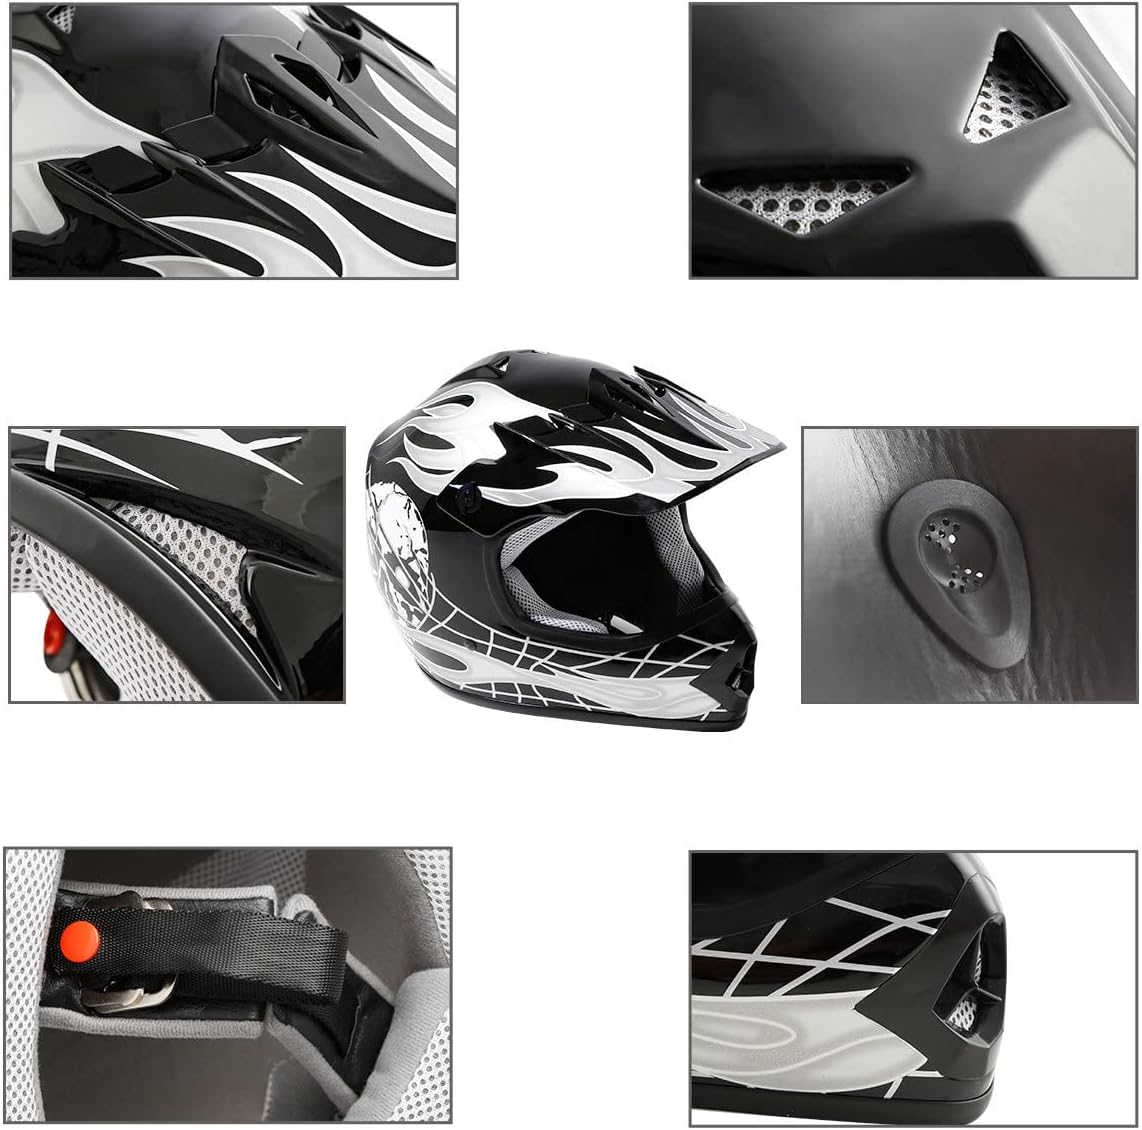 XFMT DOT Youth Kids Motocross Offroad Street Dirt Bike Helmet Goggles Gloves ATV Mx Helmet …